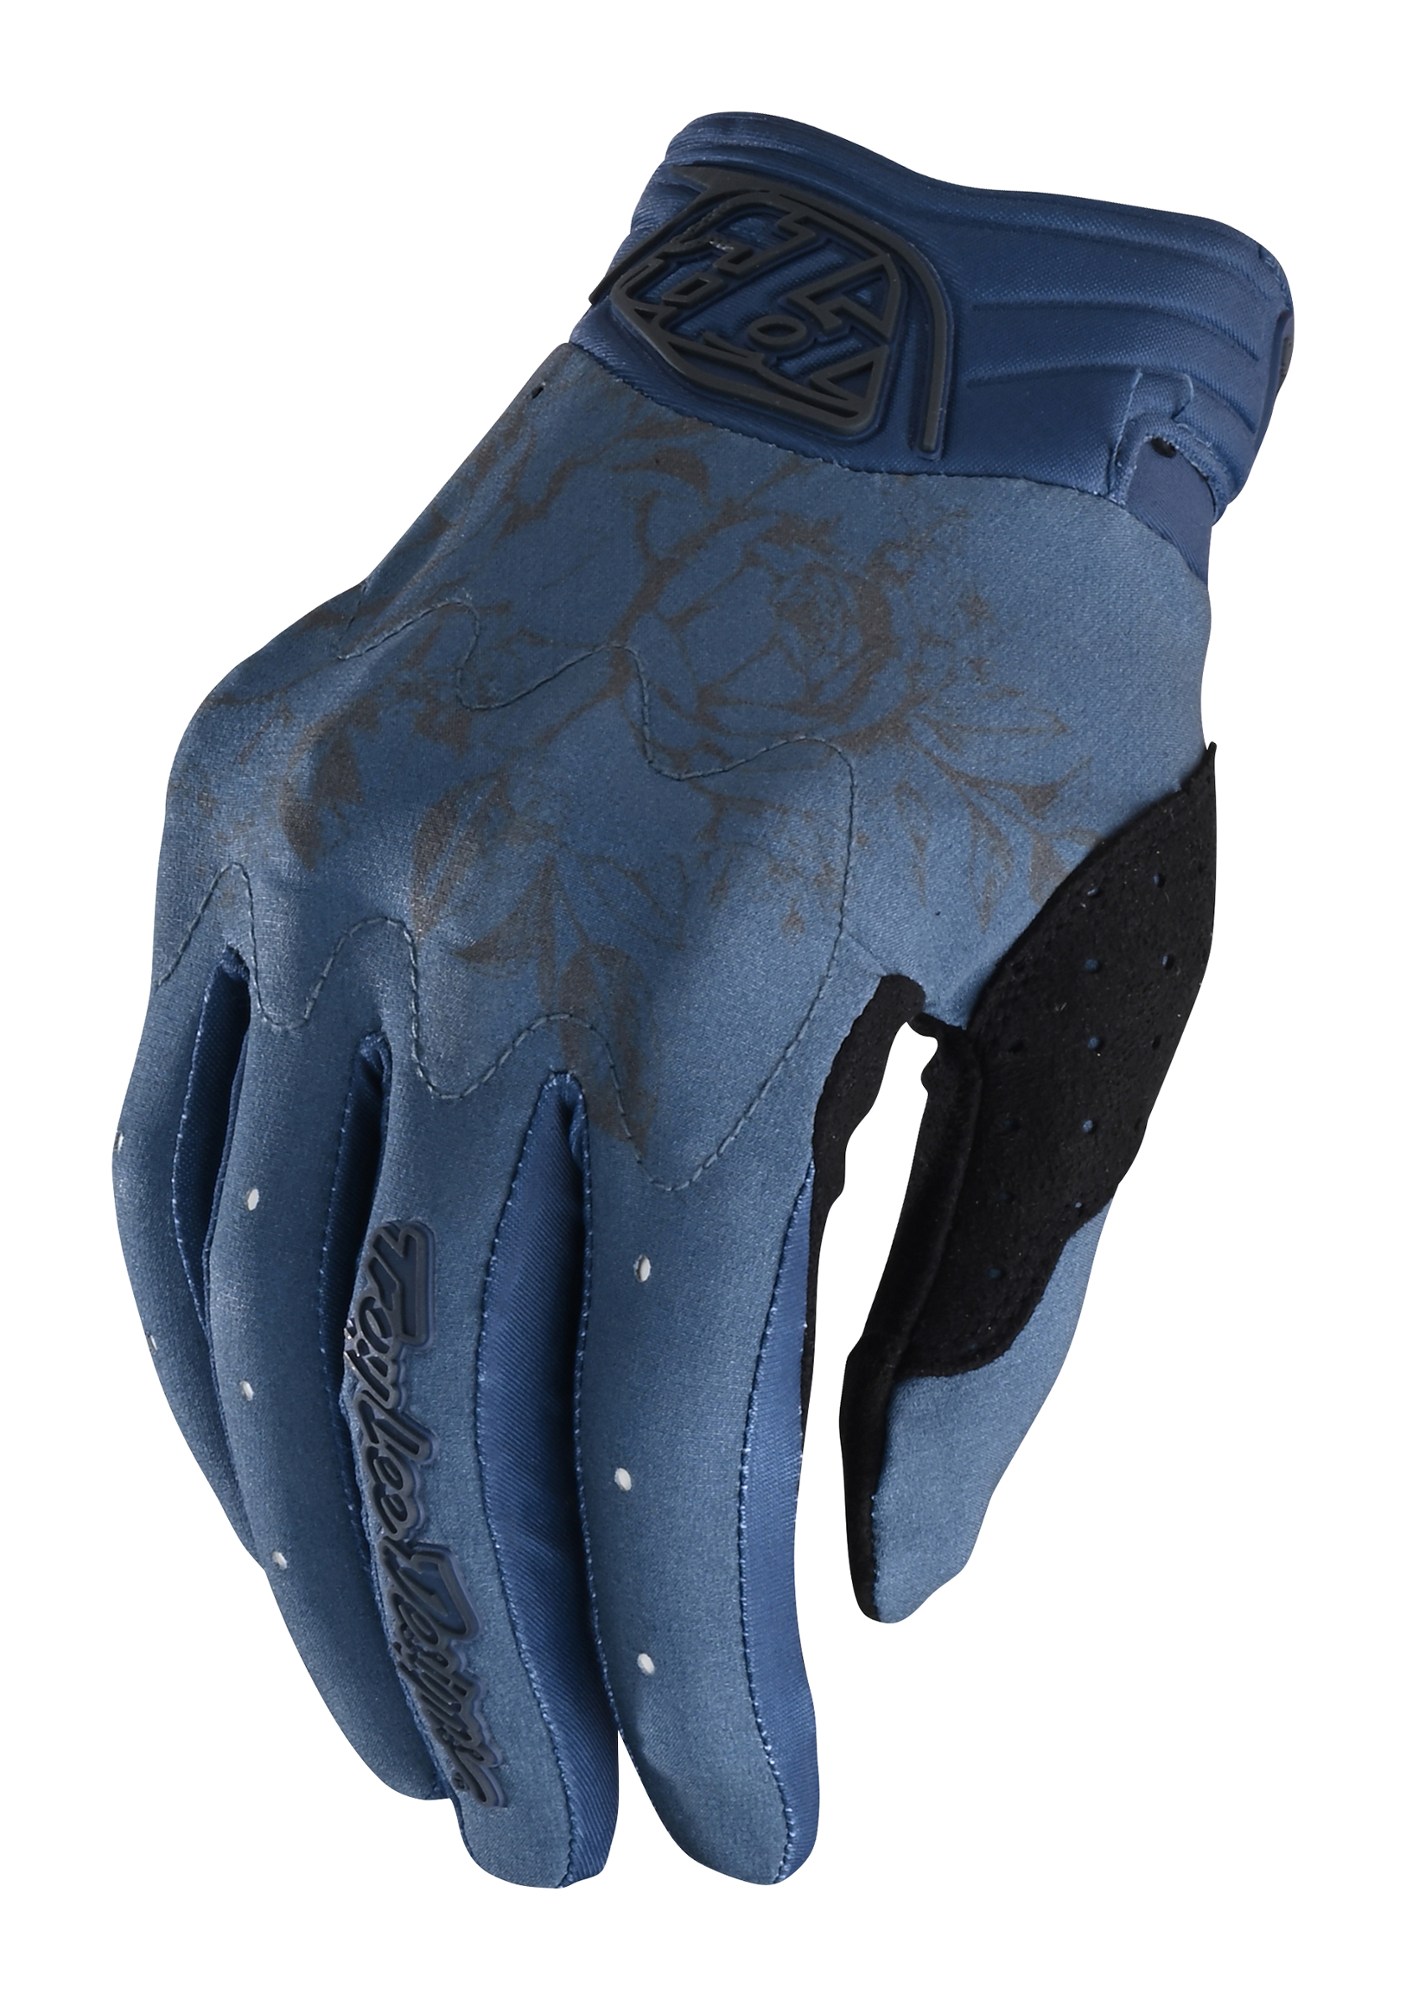 Велосипедные перчатки Gambit — женские Troy Lee Designs, синий